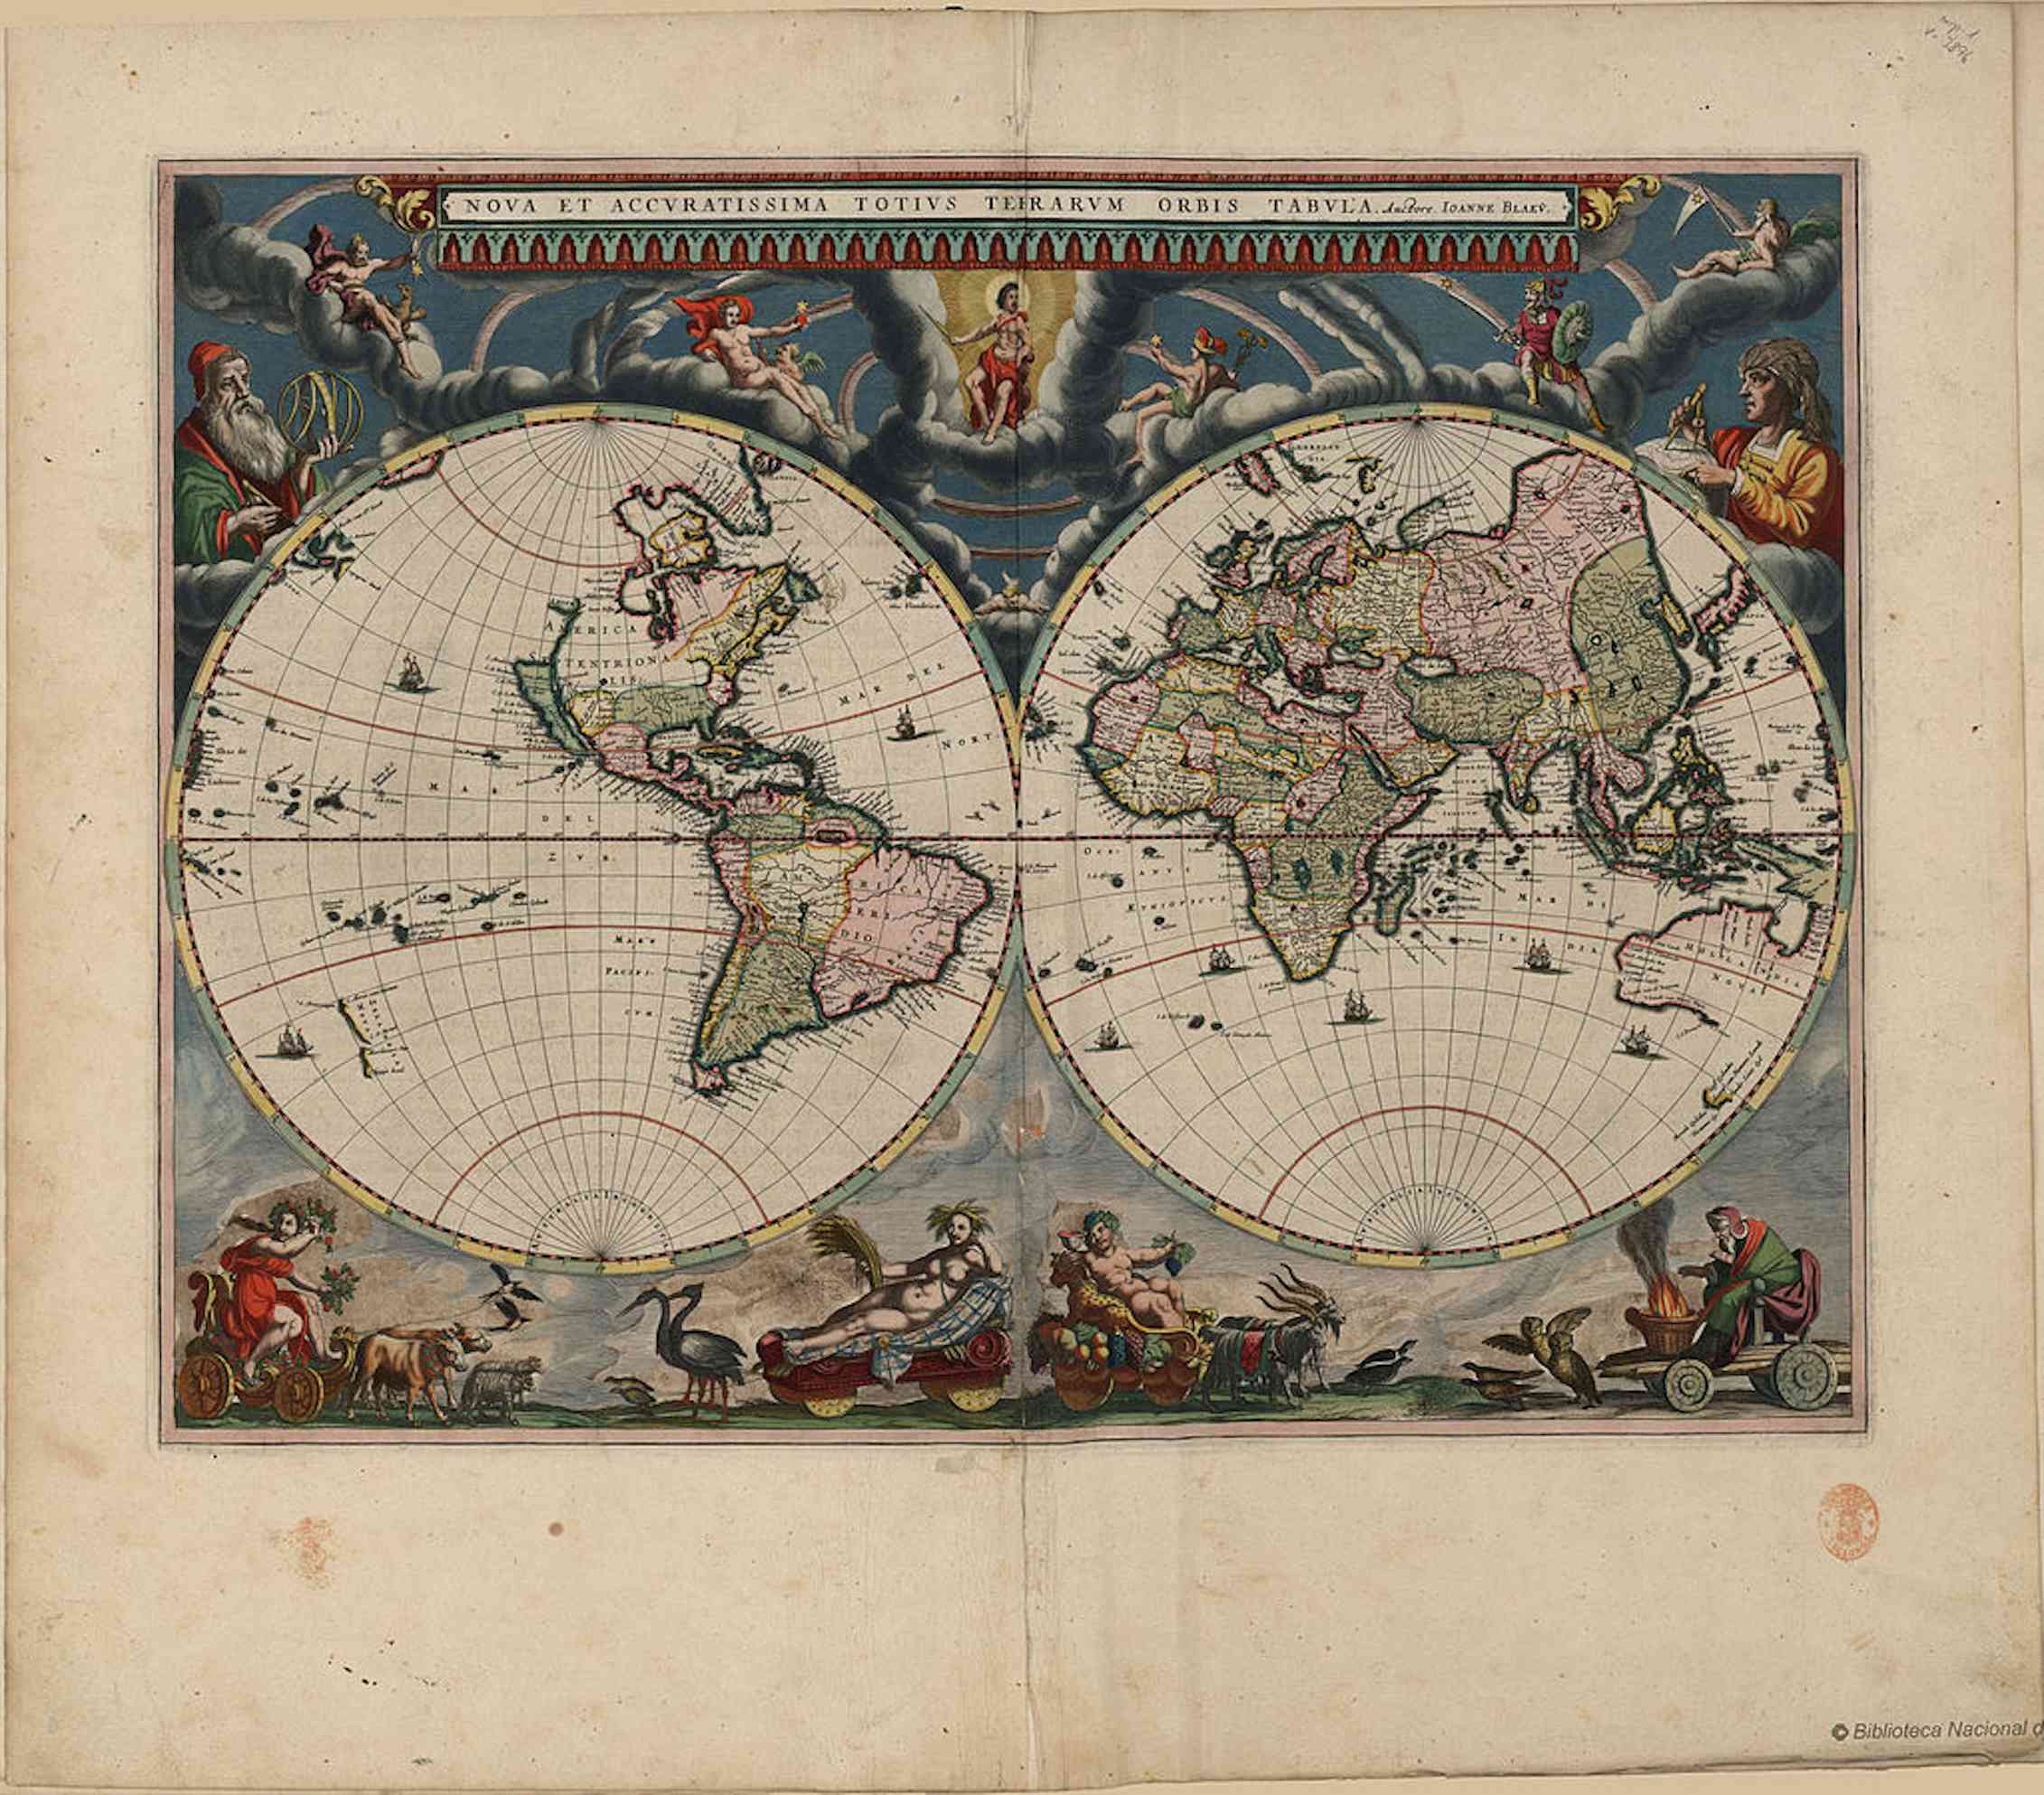 El Atlas Maior de Blaeu (1662-1672), un atlas mundial de la Edad de Oro de la cartografía holandesa/neerlandesa (c. 1570s-1670s) y obra de Willem Blaeu y su hijo Joan Blaeu, ambos cartógrafos oficiales de la Compañía Neerlandesa de las Indias Orientales. Wikimedia Commons / Biblioteca Nacional de España